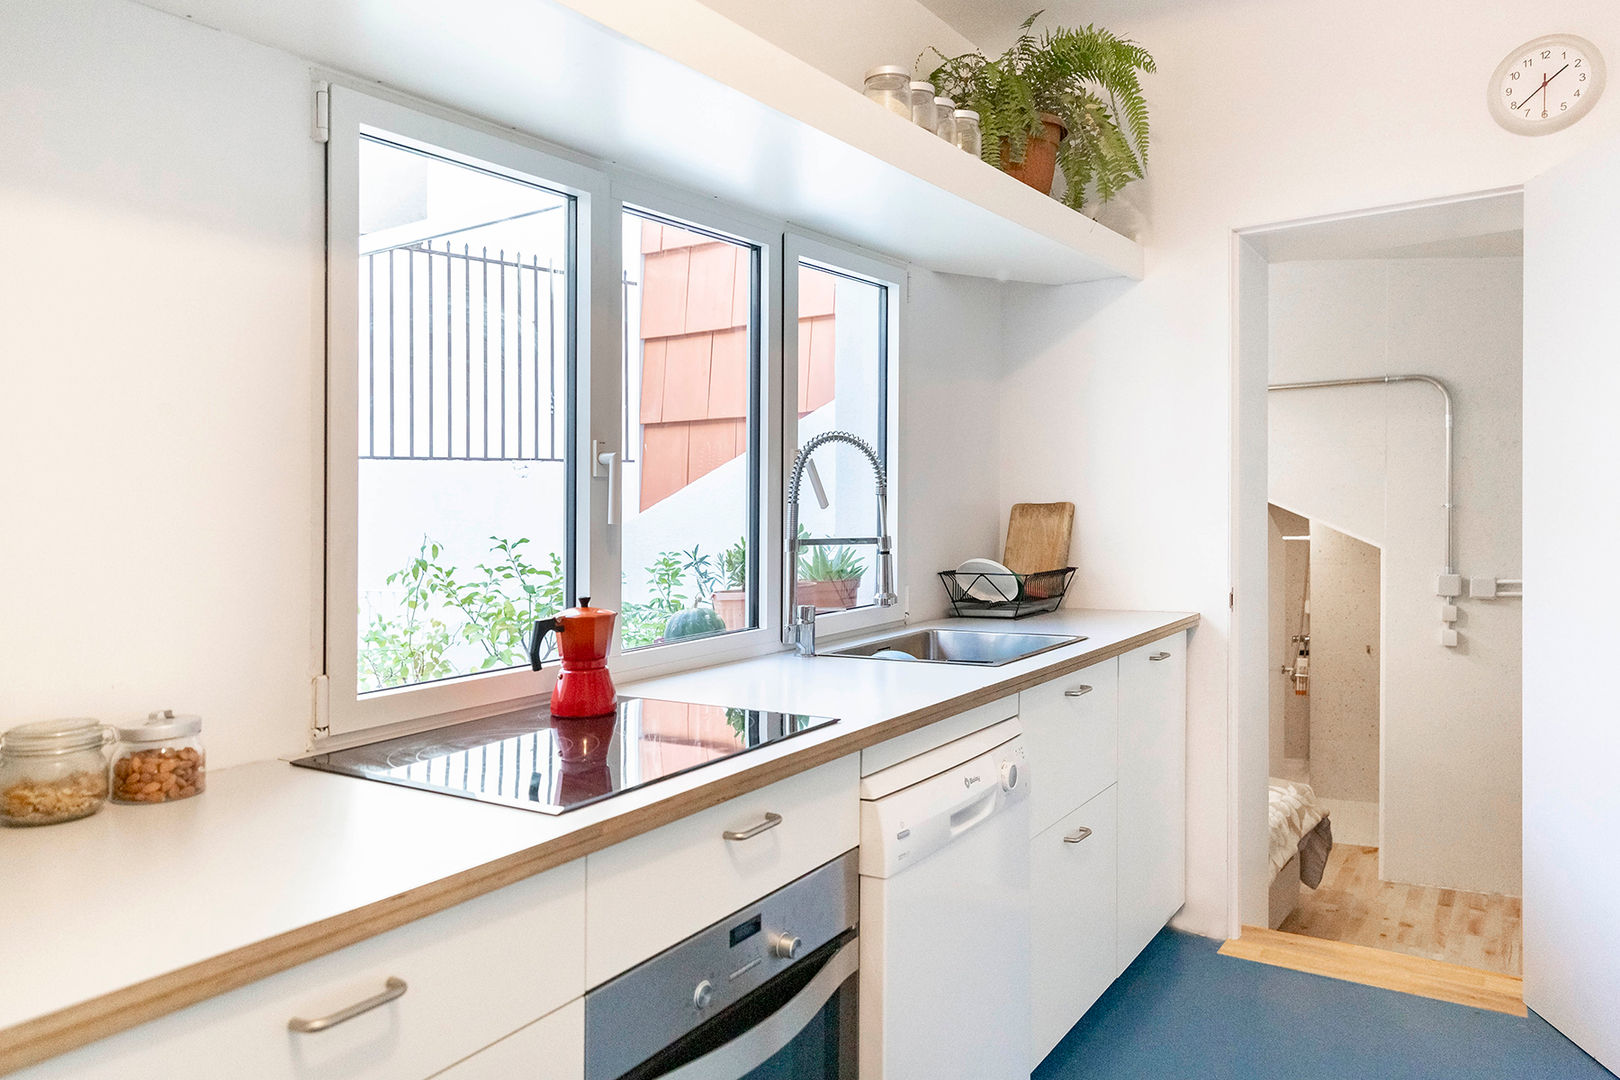 Taller Convertido en Vivienda, IMAGINEAN IMAGINEAN Built-in kitchens Plywood